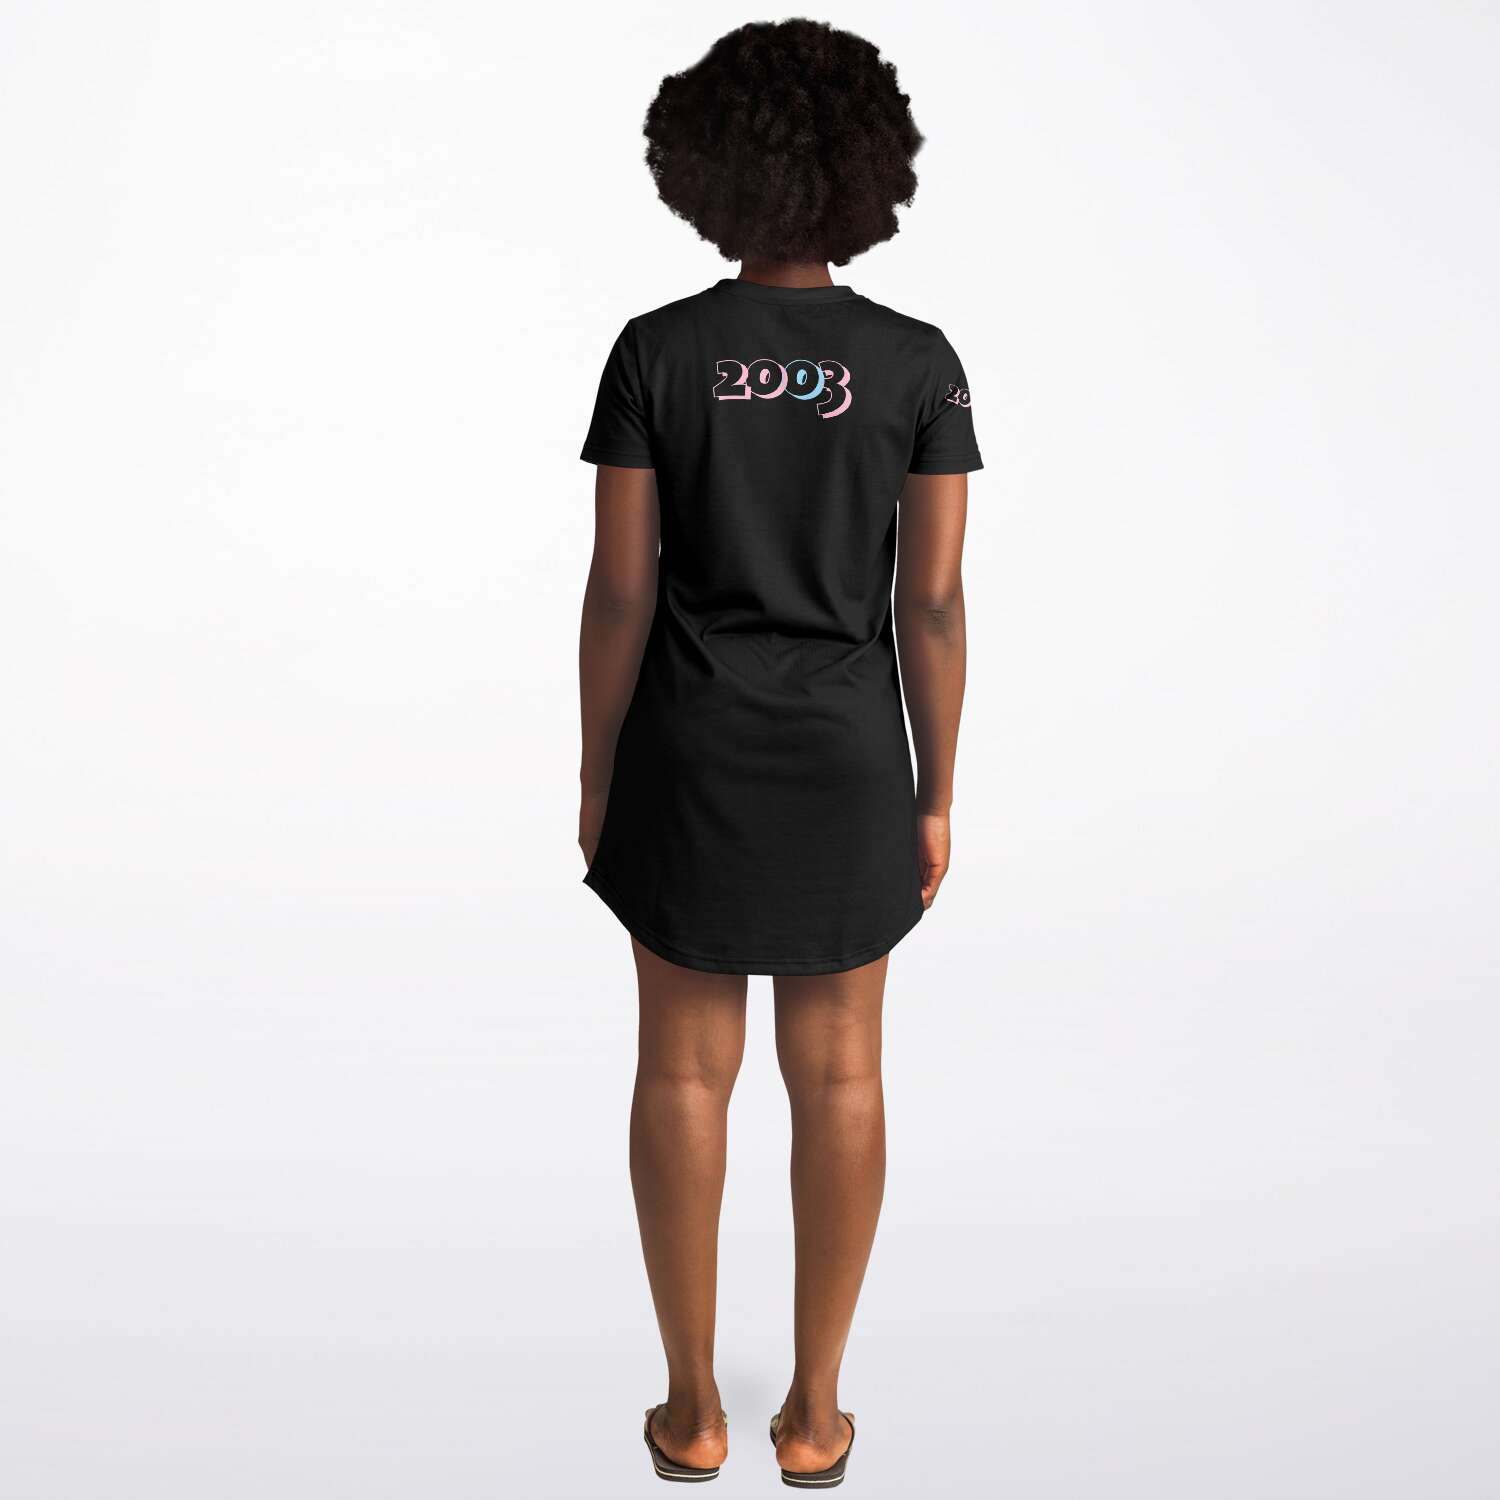 Sigma Beta Xi 2003 T-Shirt Dress - Black